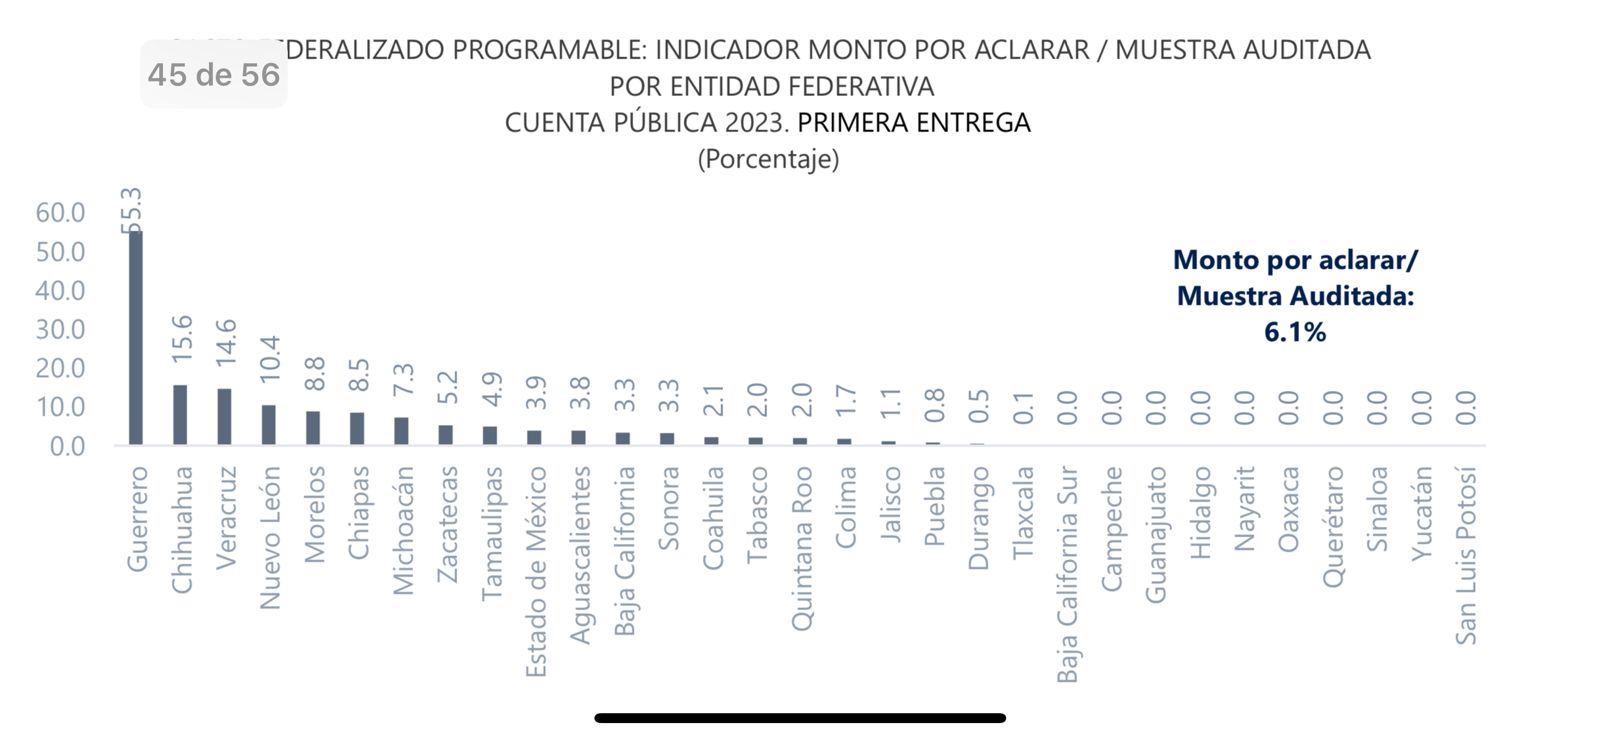 San Luis Potosí el mejor evaluado en primer informe de la ASF 